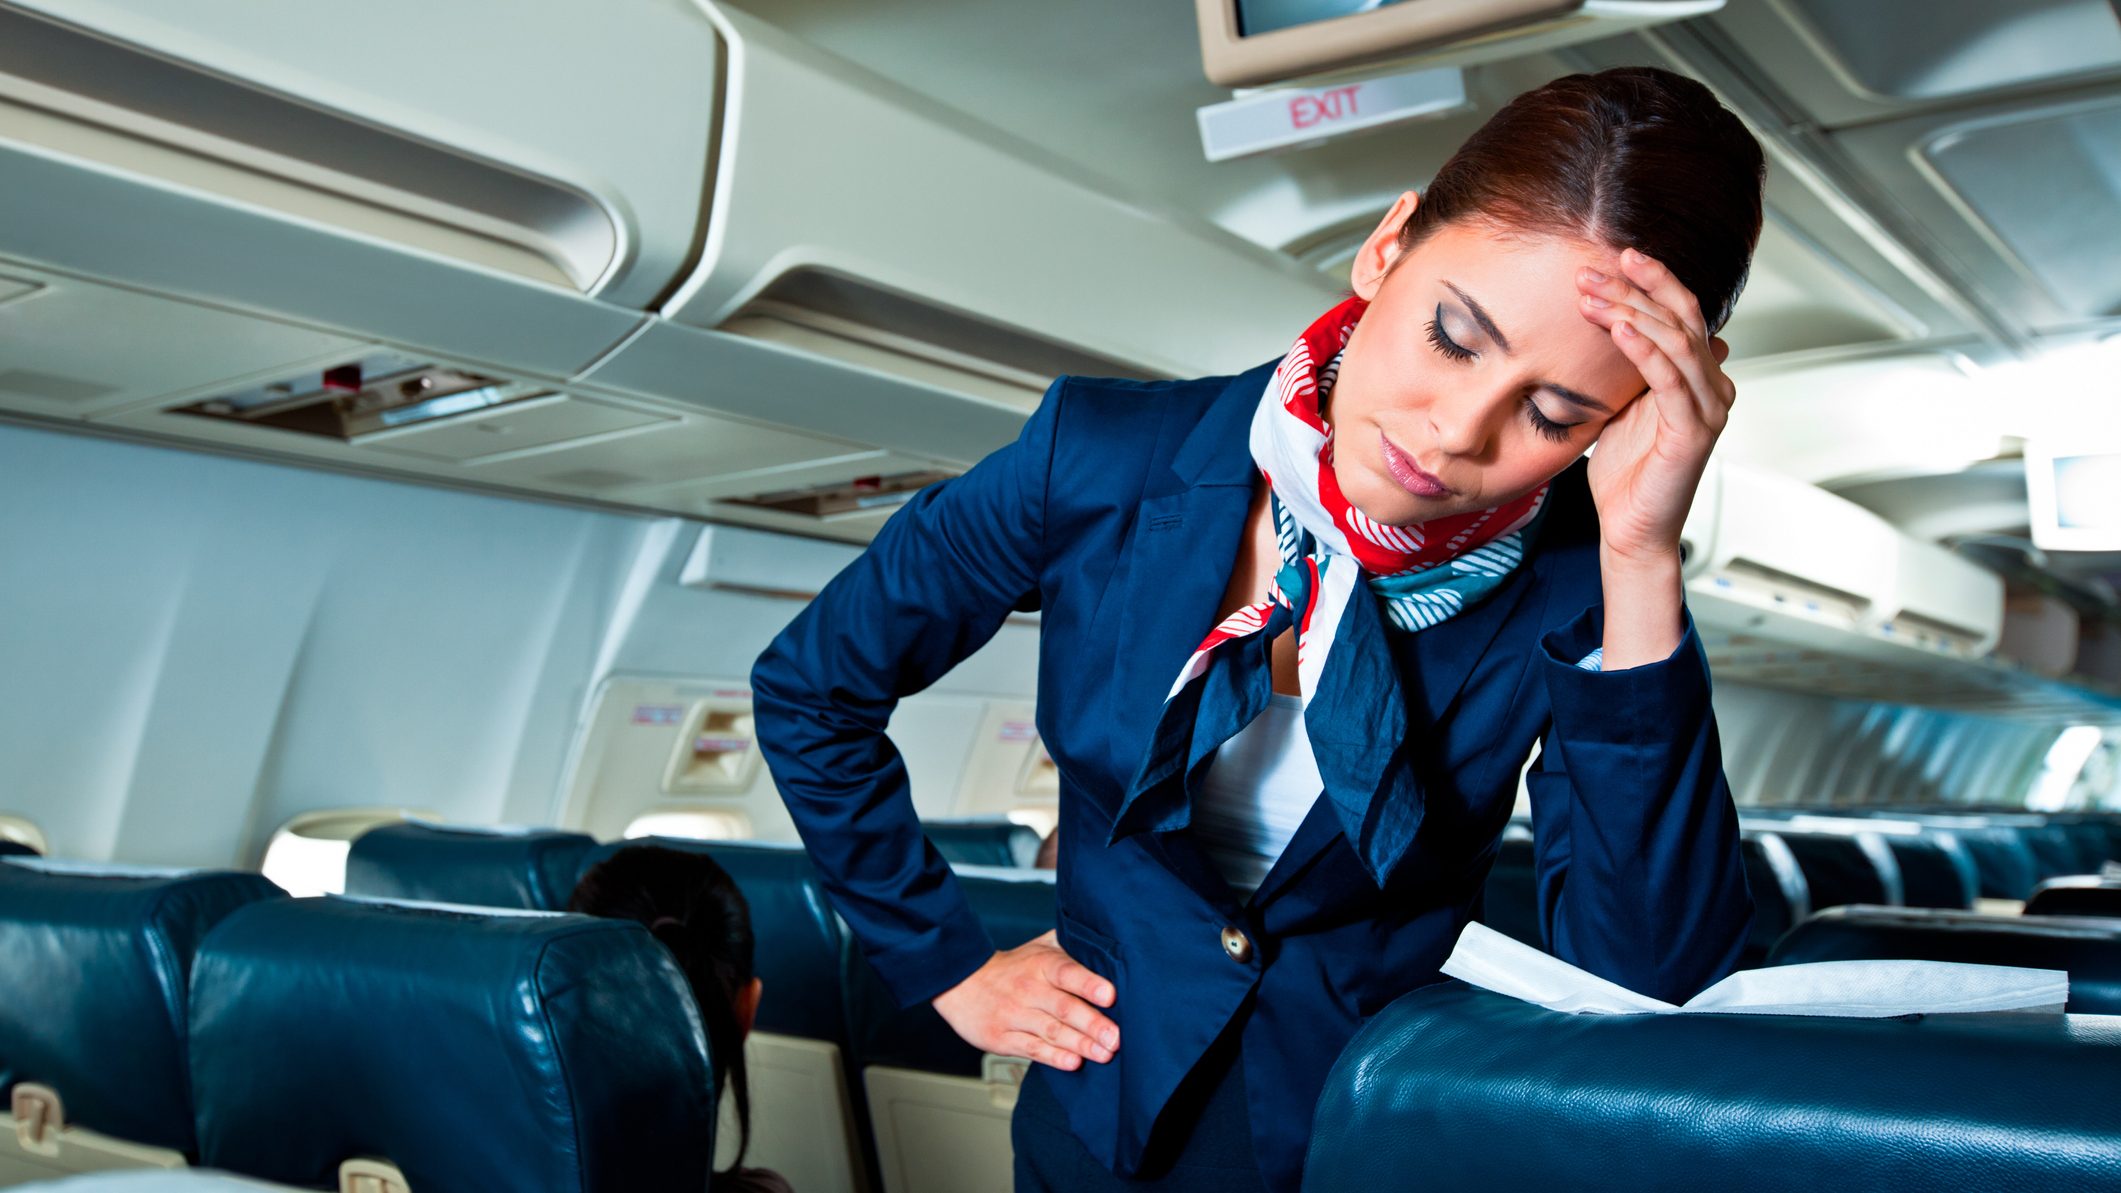 Ne ragasszák az üléshez az utasokat – figyelmeztette a légitársaság az utaskísérőket